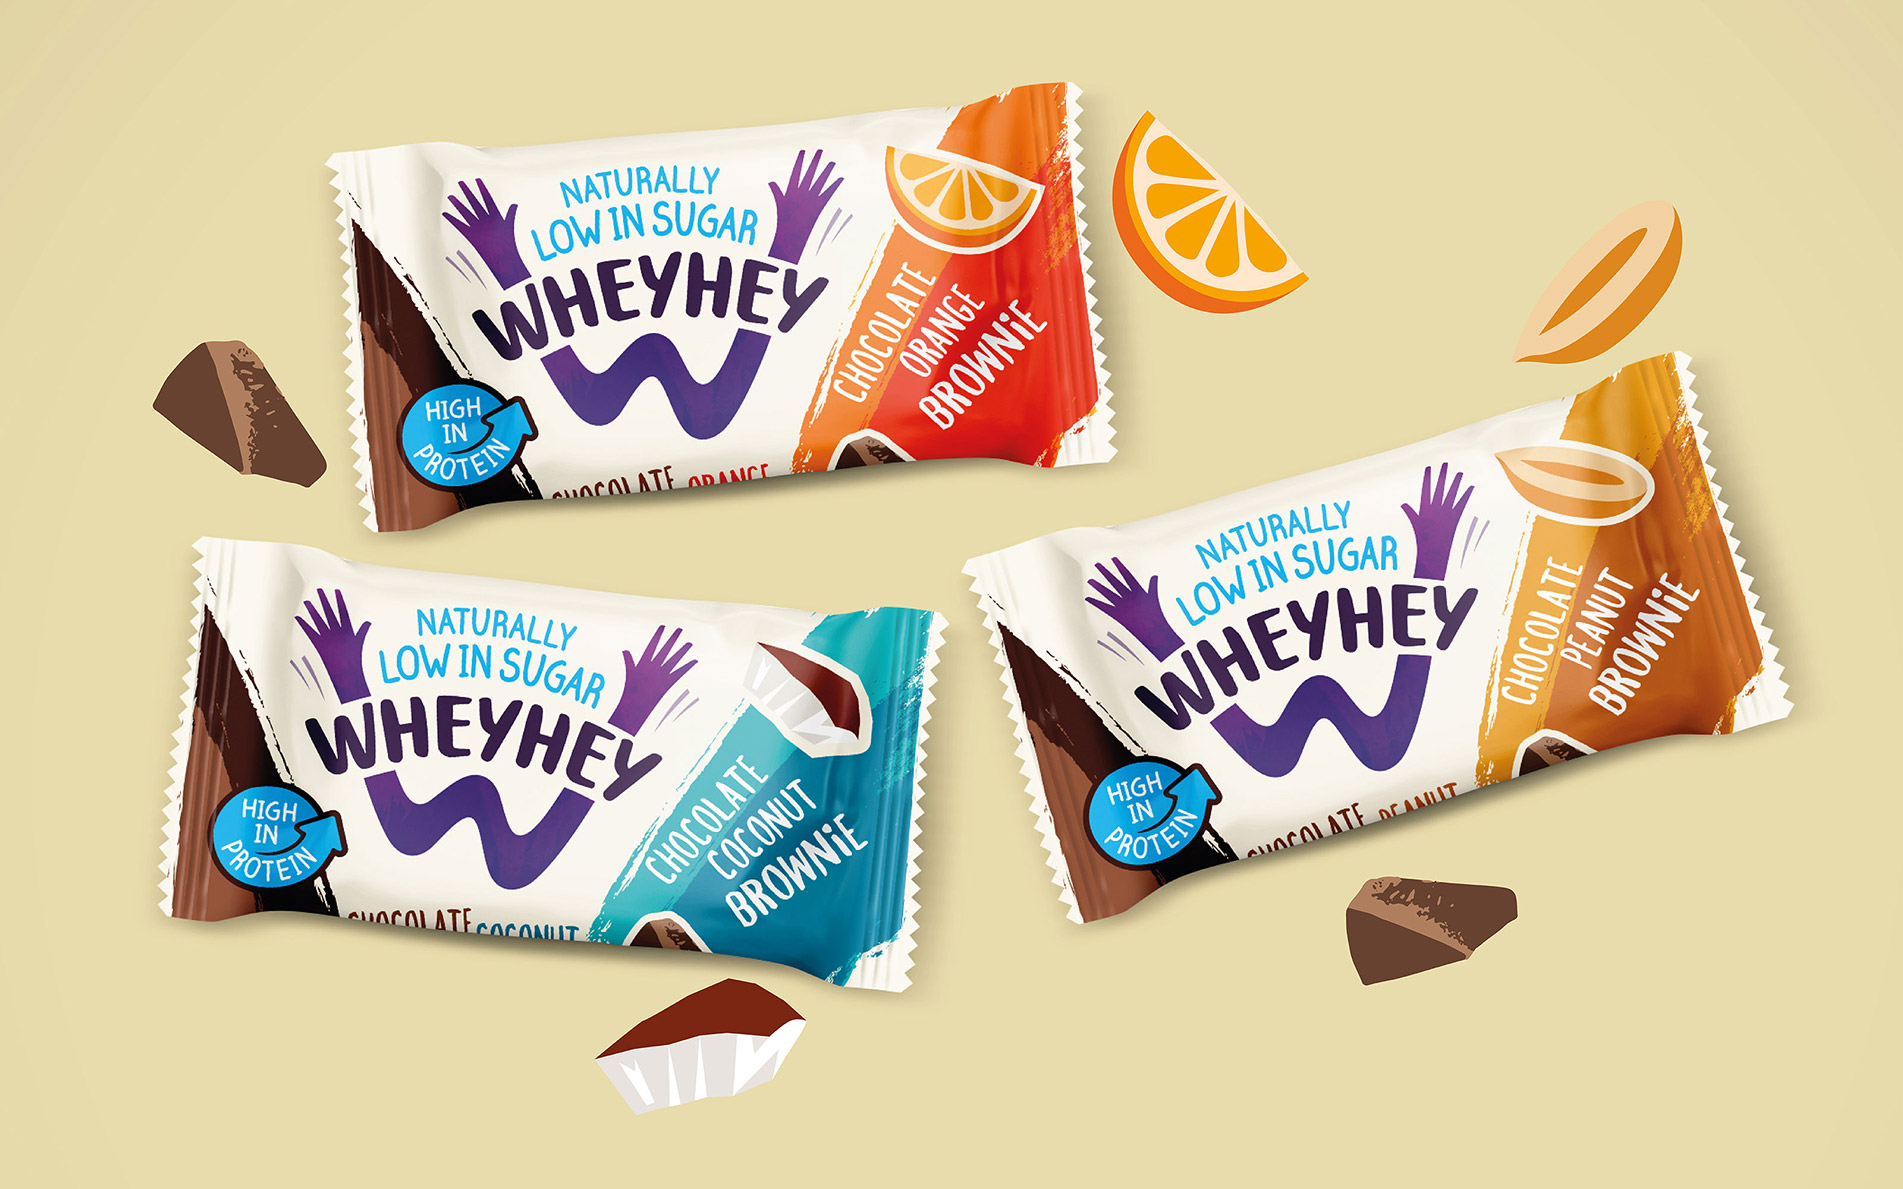 Wheyhey sugar free brownies packaging - Rylands Brand Design